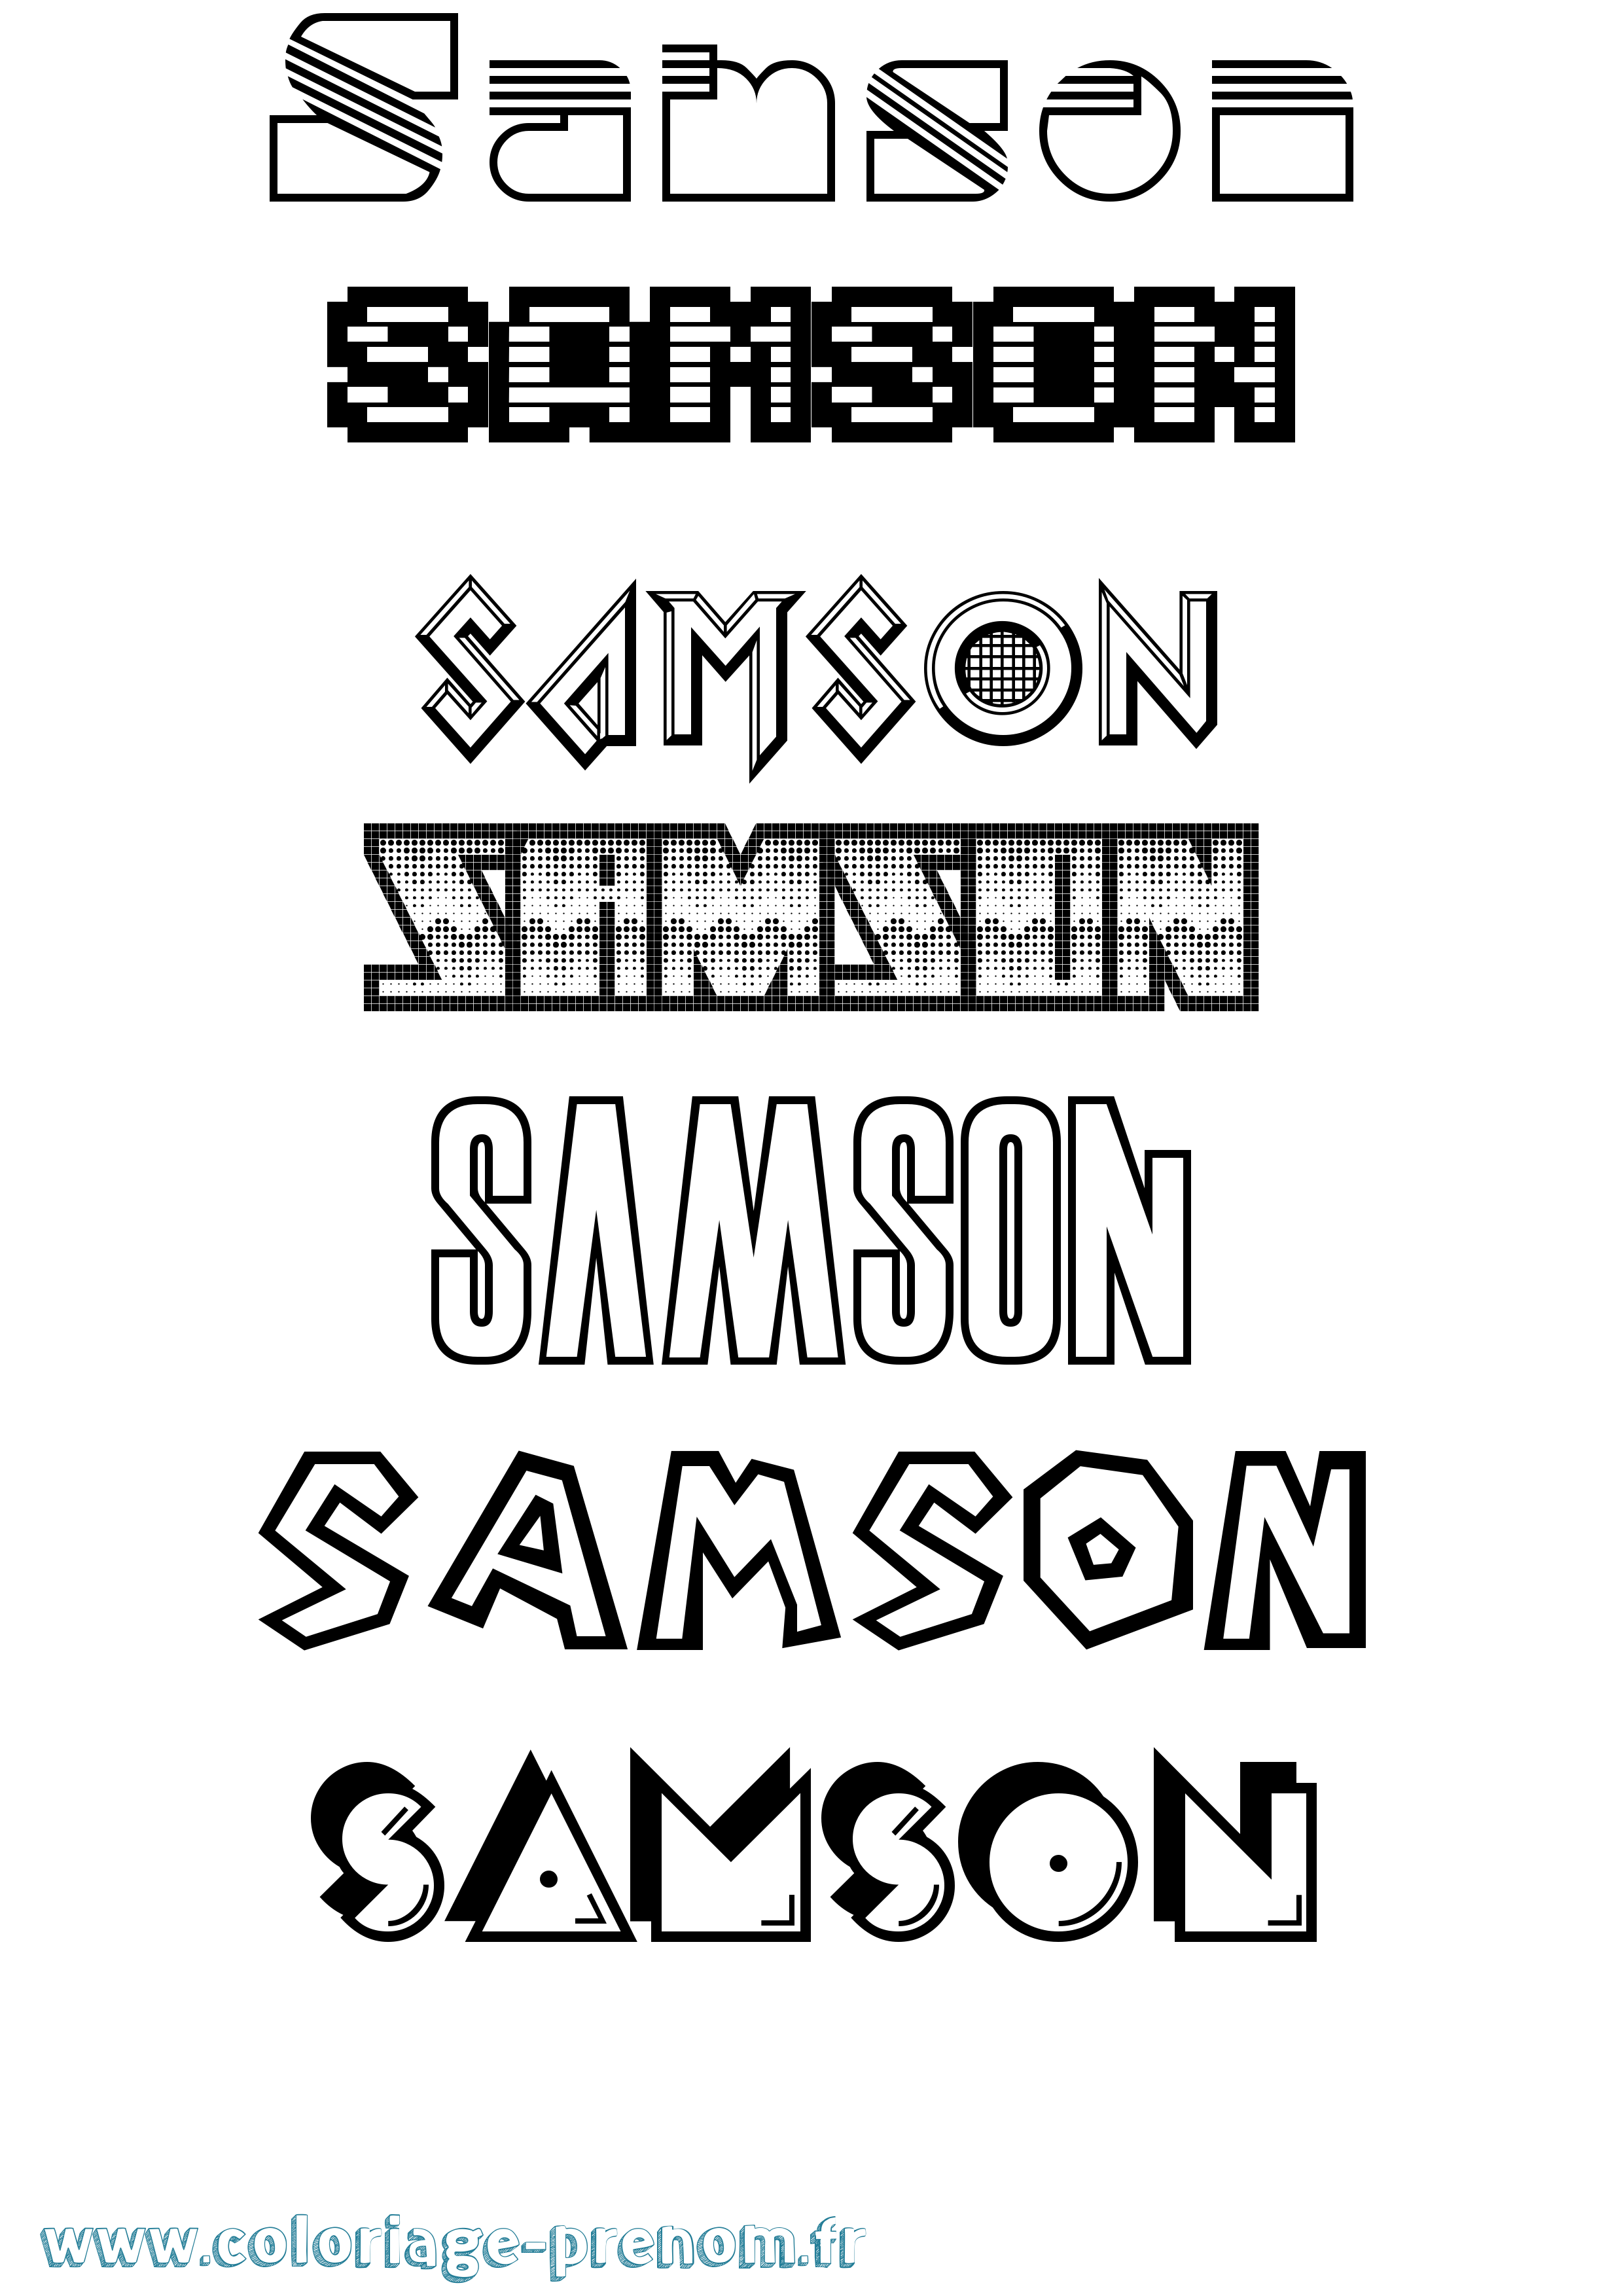 Coloriage prénom Samson